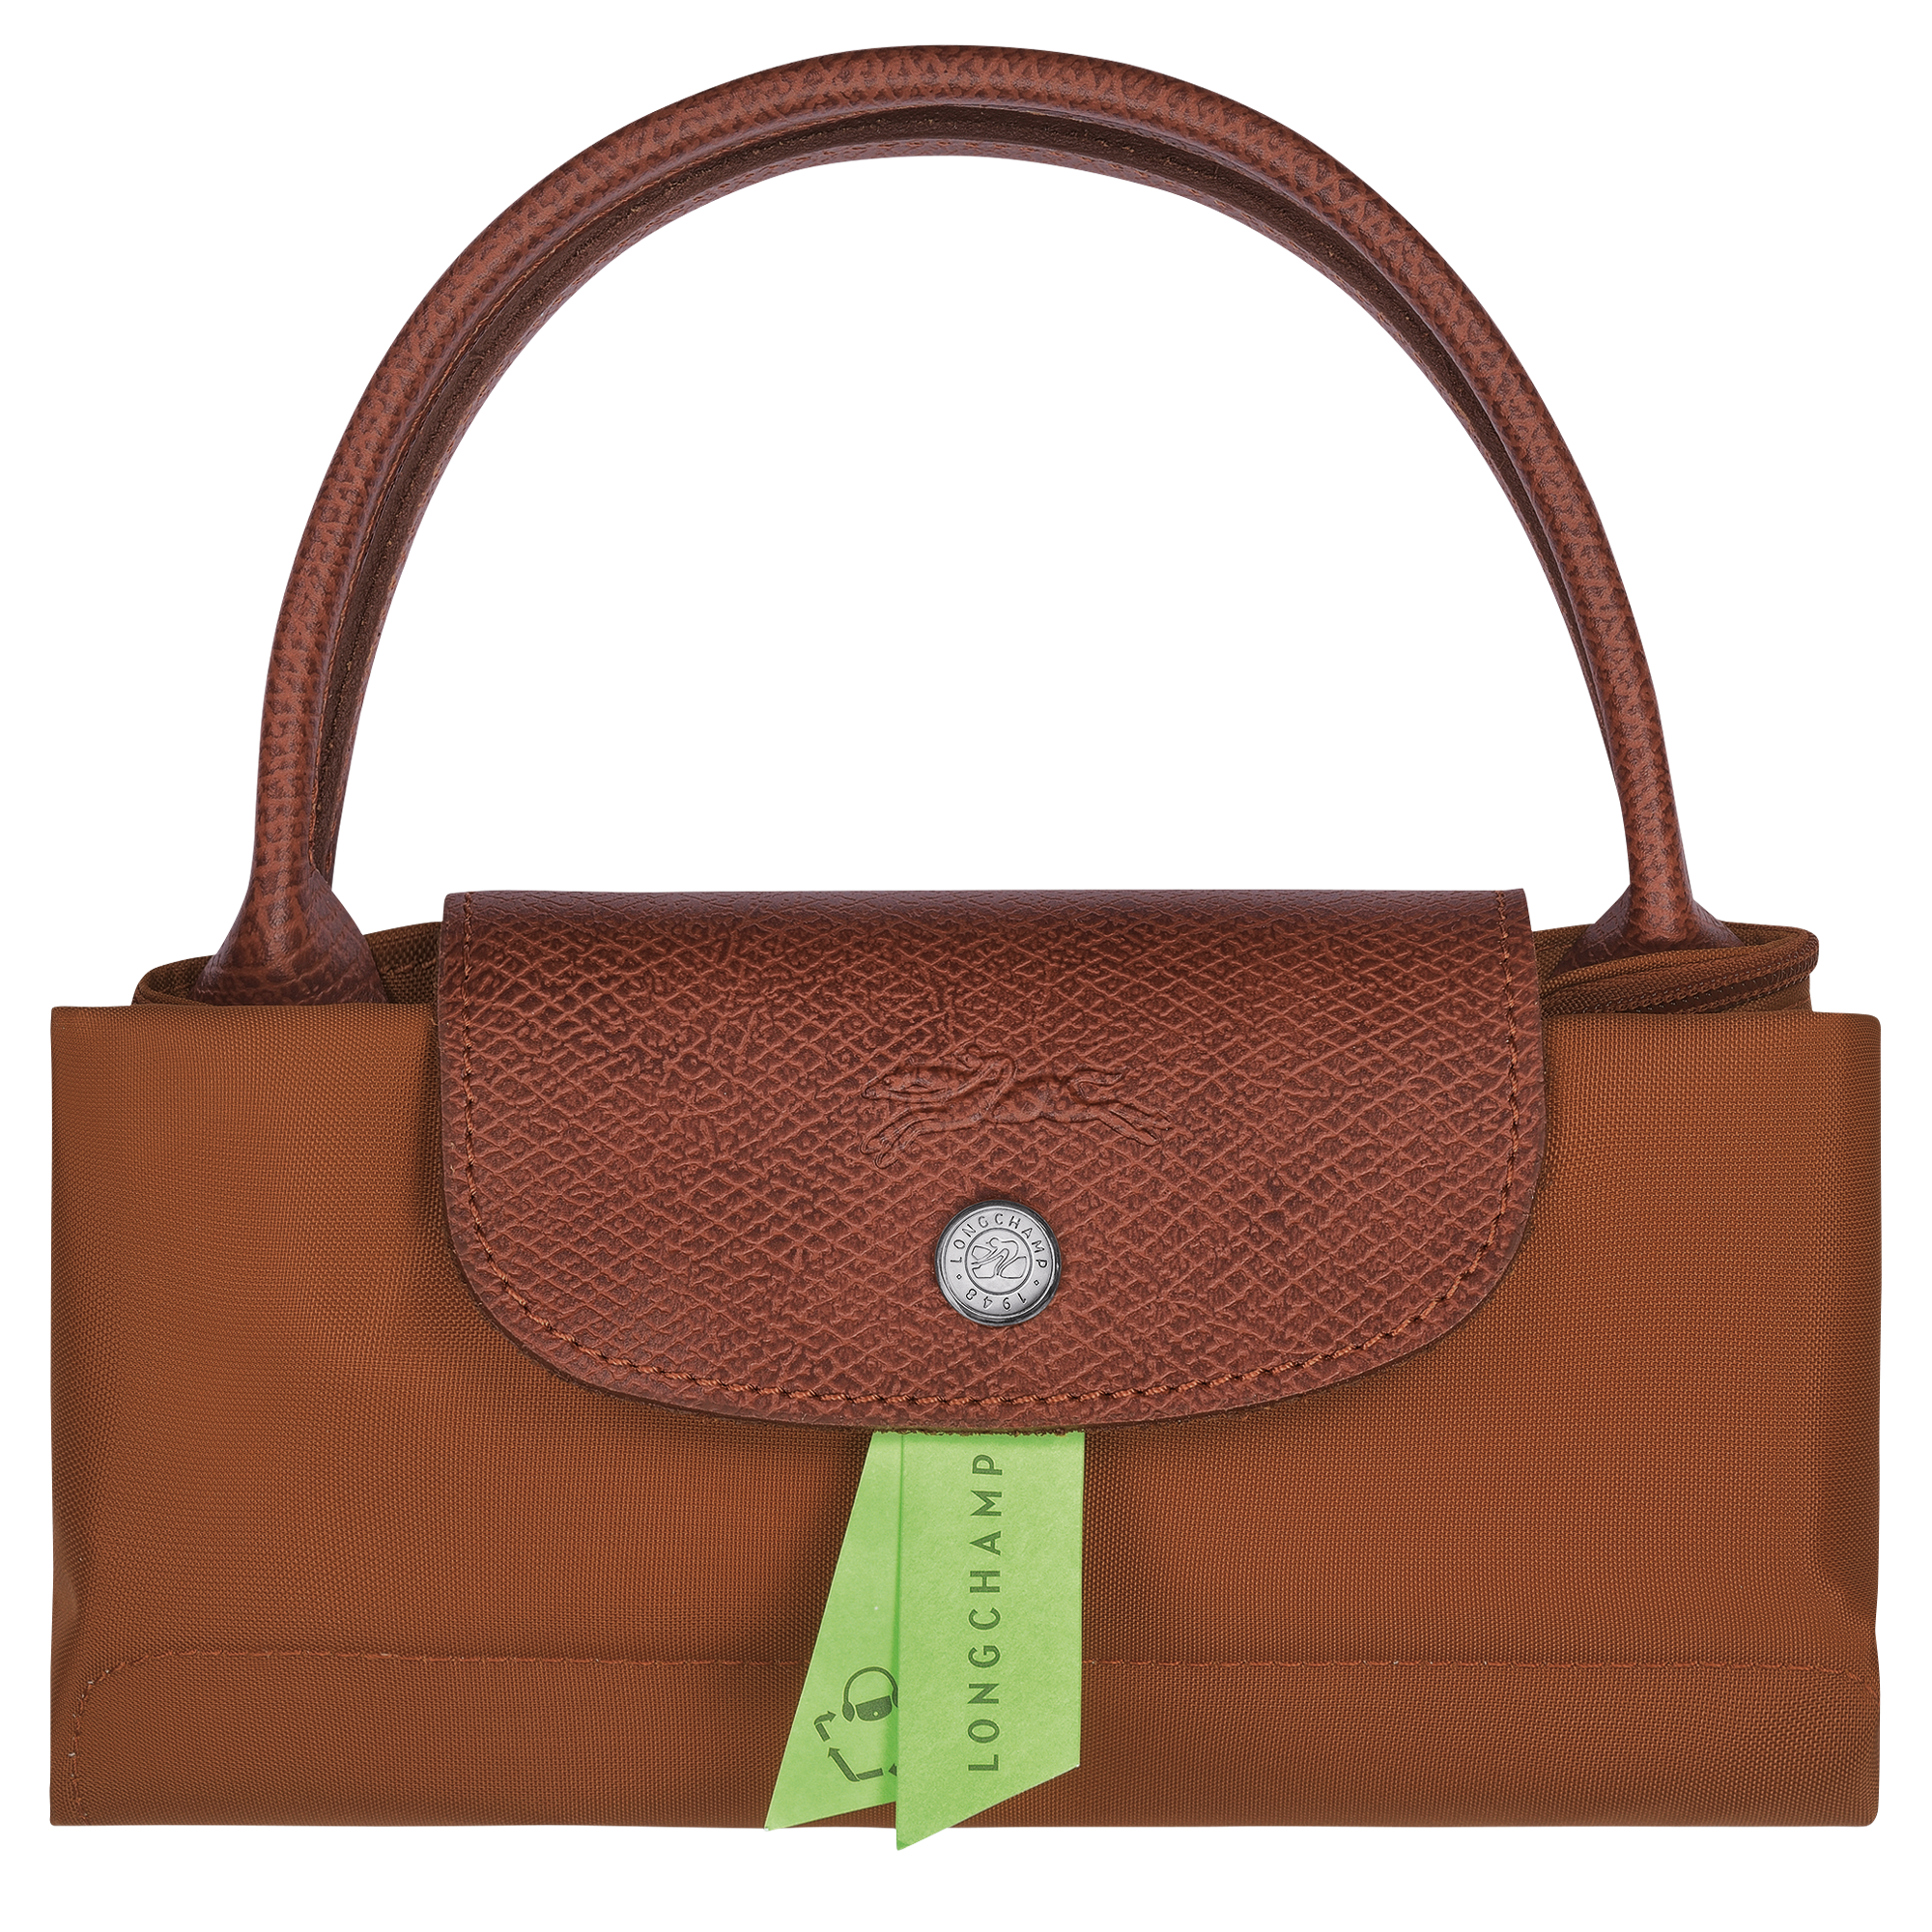 Longchamp Mini Pouch with handle Cognac Color women handbag